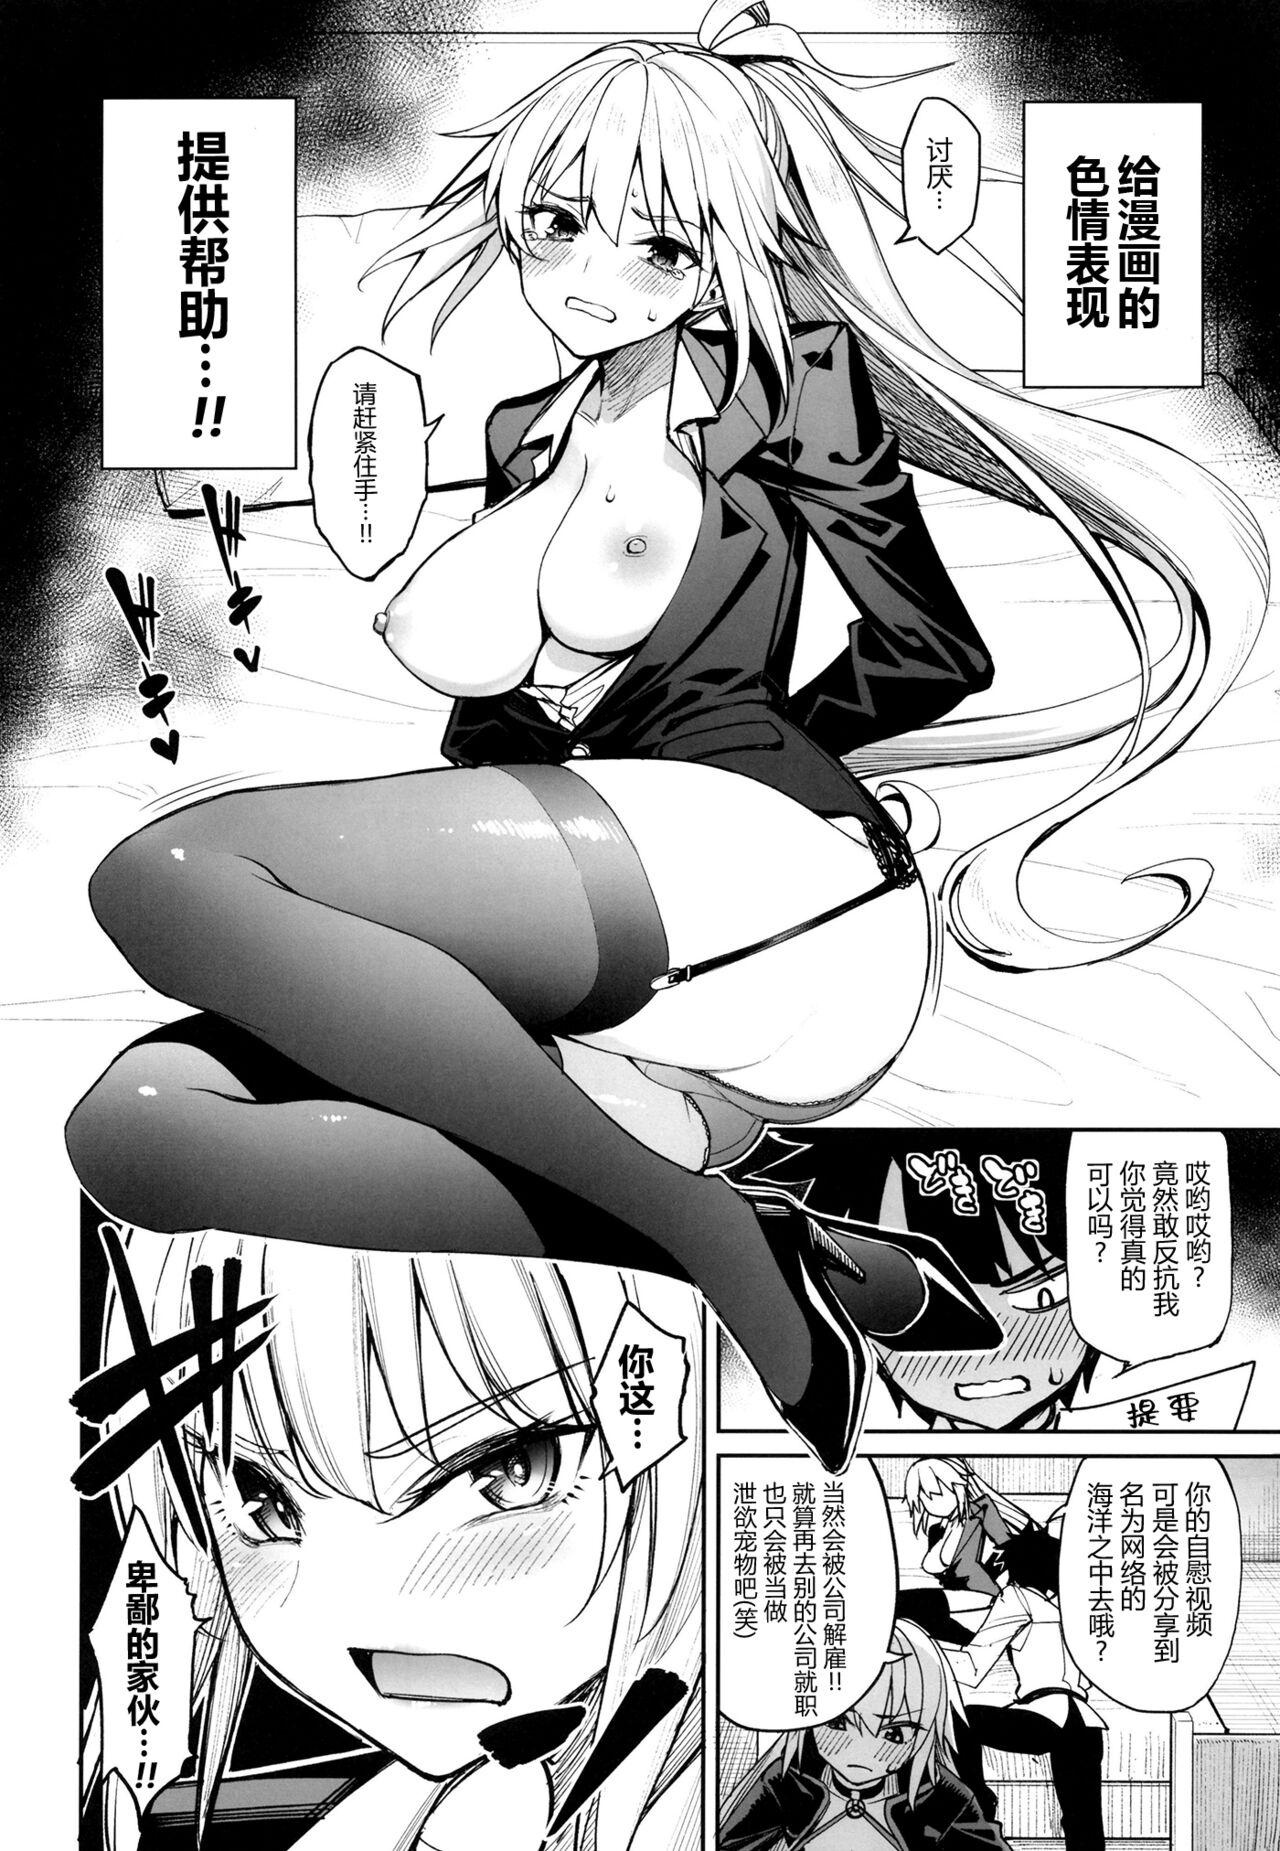 Hetero Anetachi ga natsu no umi demo guigui kuru kudan. - Fate grand order Cutie - Page 8